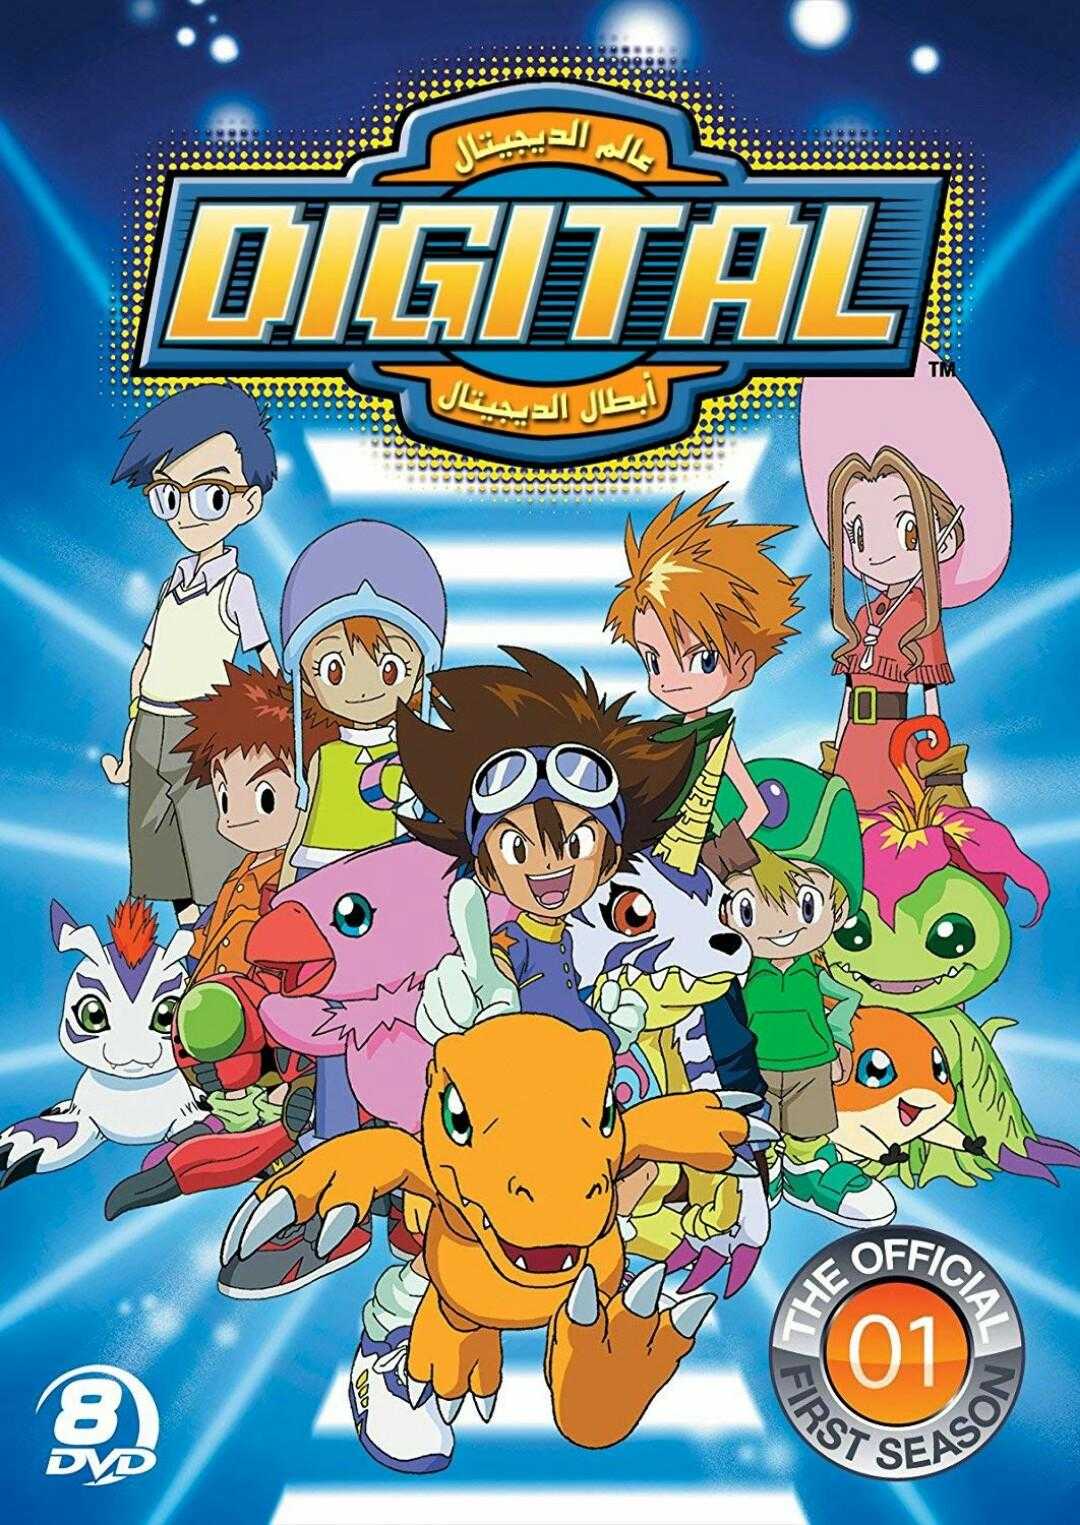 مشاهدة انمي أبطال الديجيتال Digimon: Digital Monsters موسم 3 حلقة 8 مدبلجة (1999)